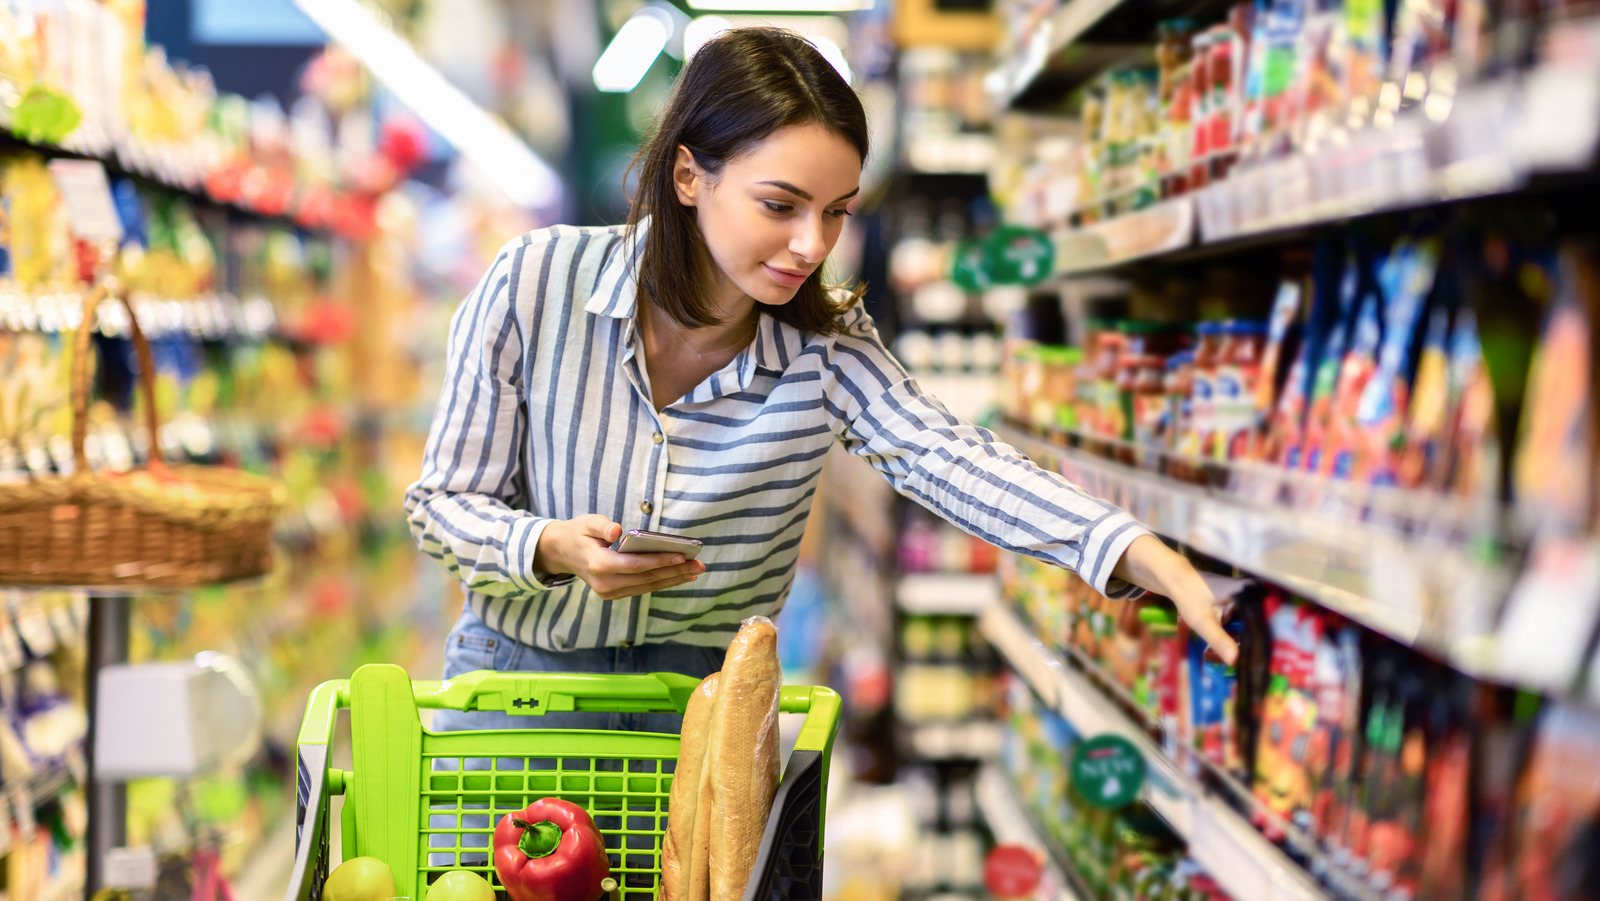 کیفیت محصولات سوپرمارکت در عمده فروشی